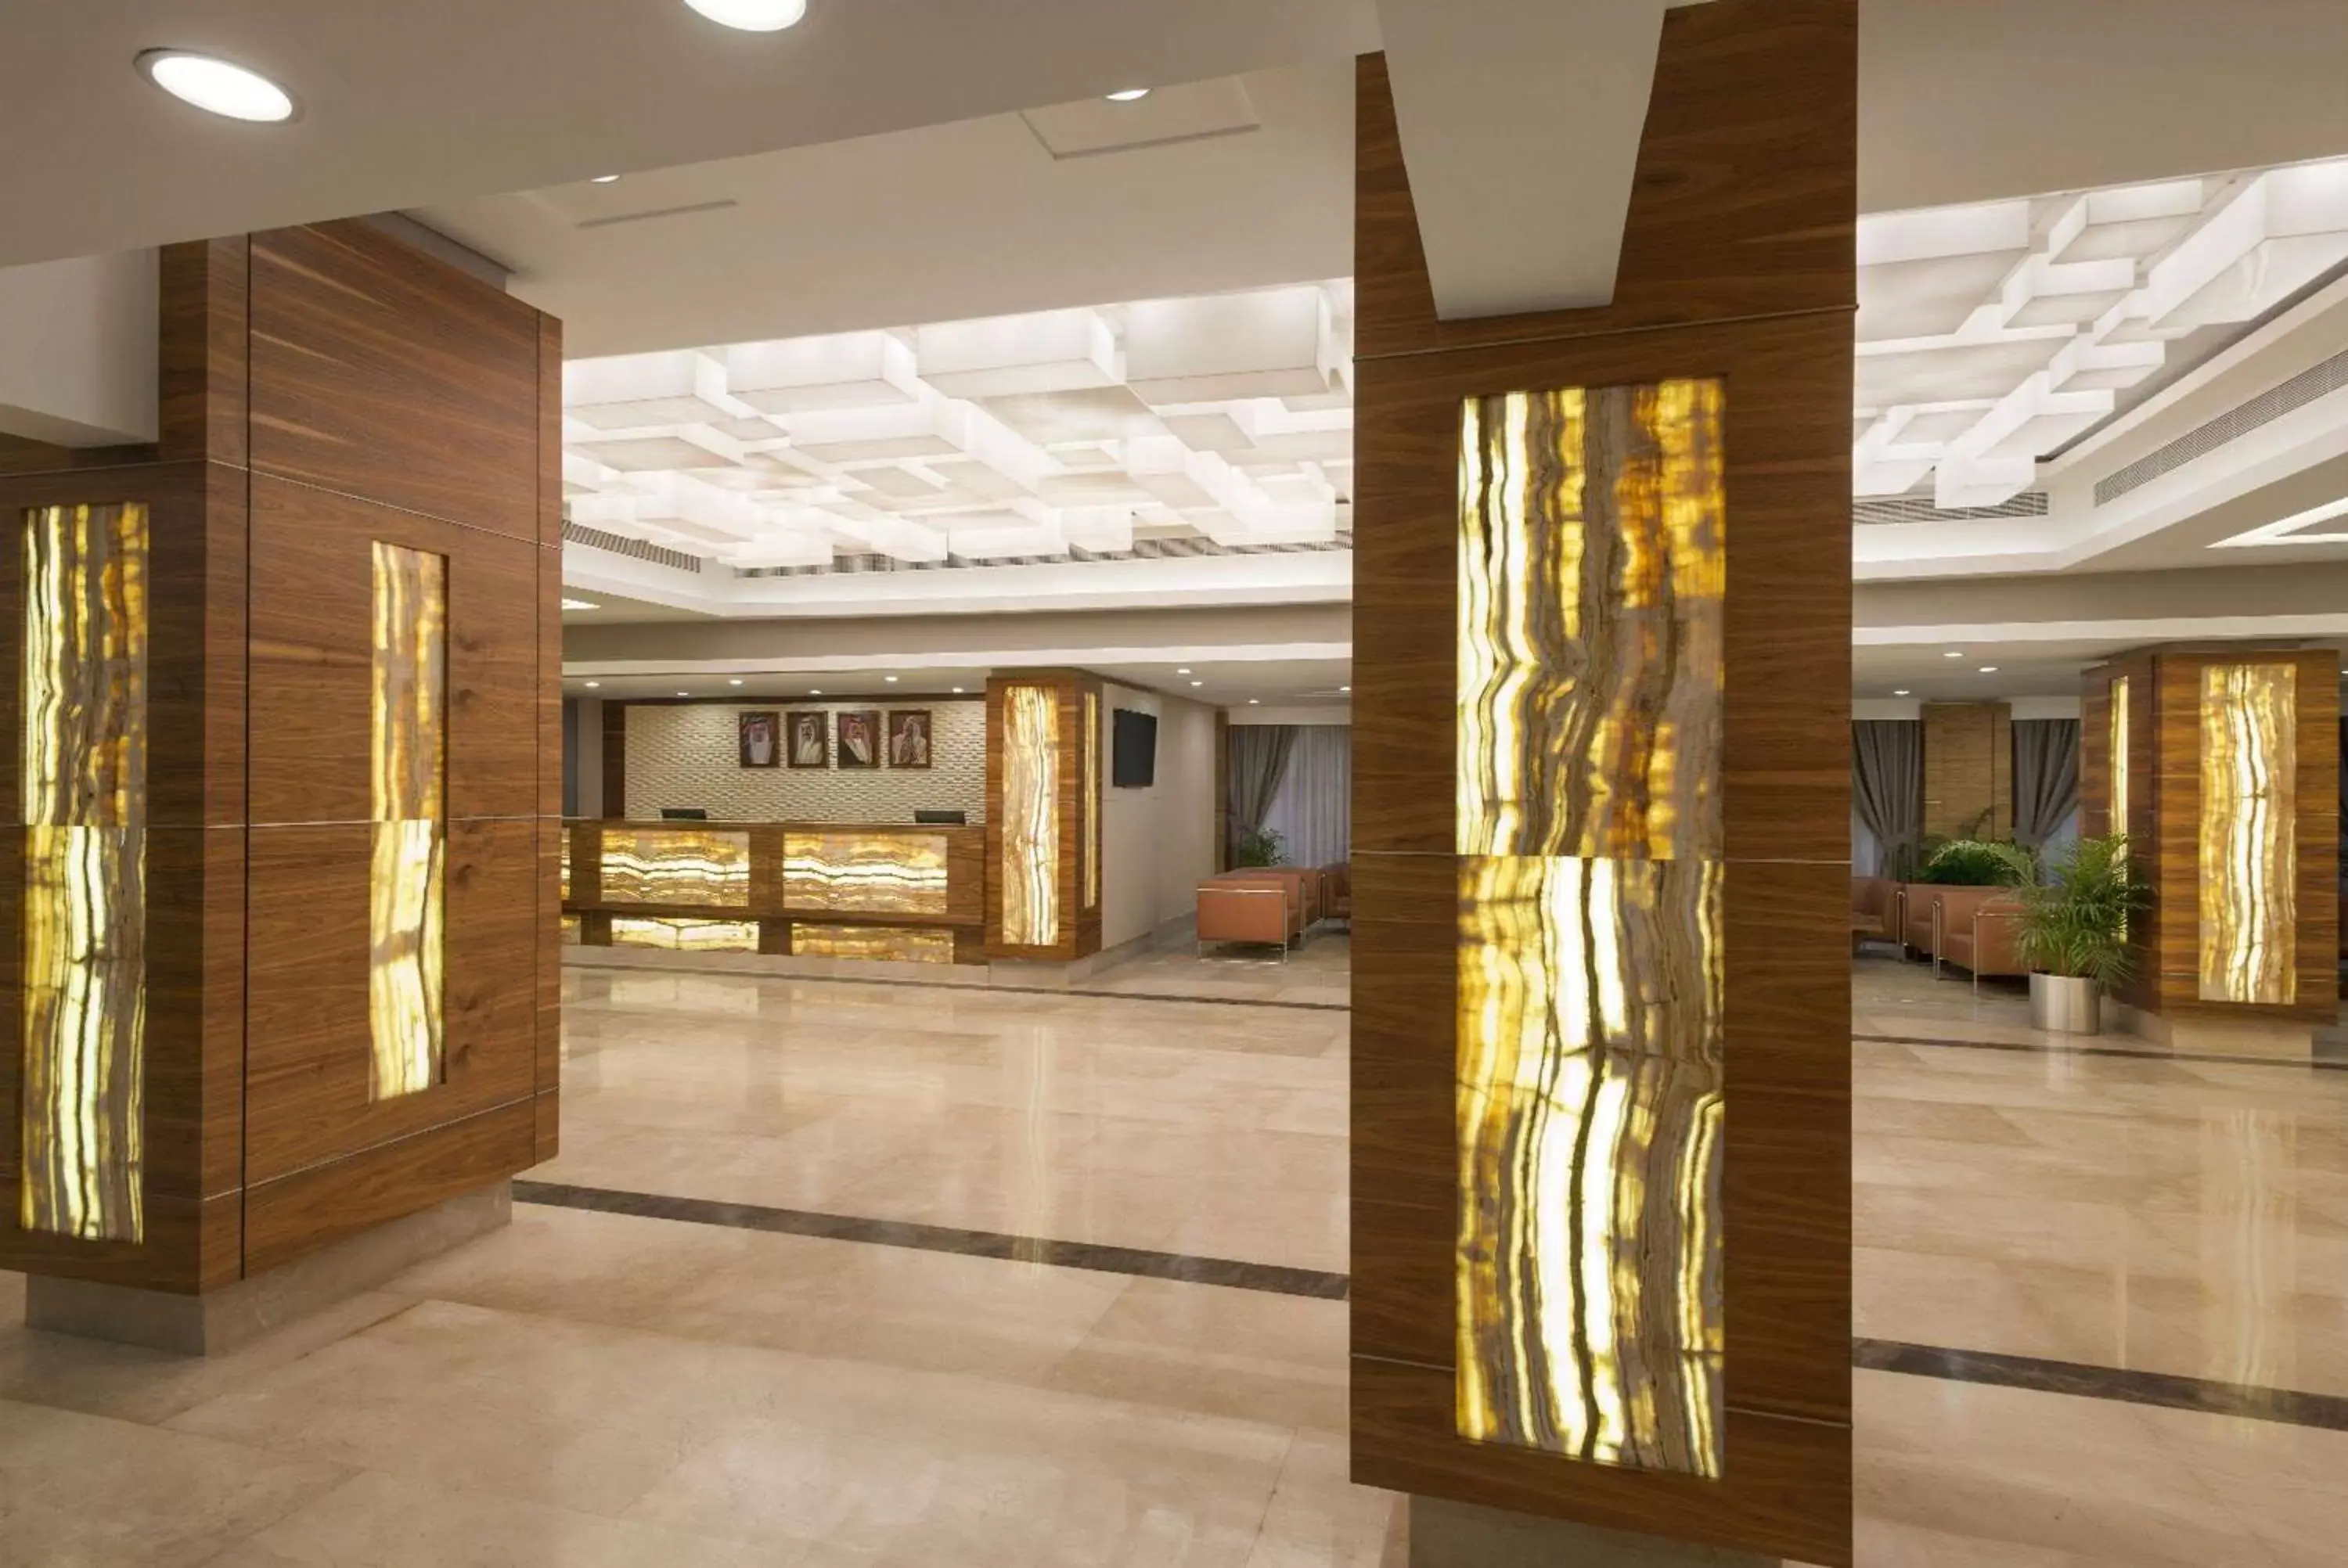 Lobby or reception in Ramada by Wyndham Bahrain